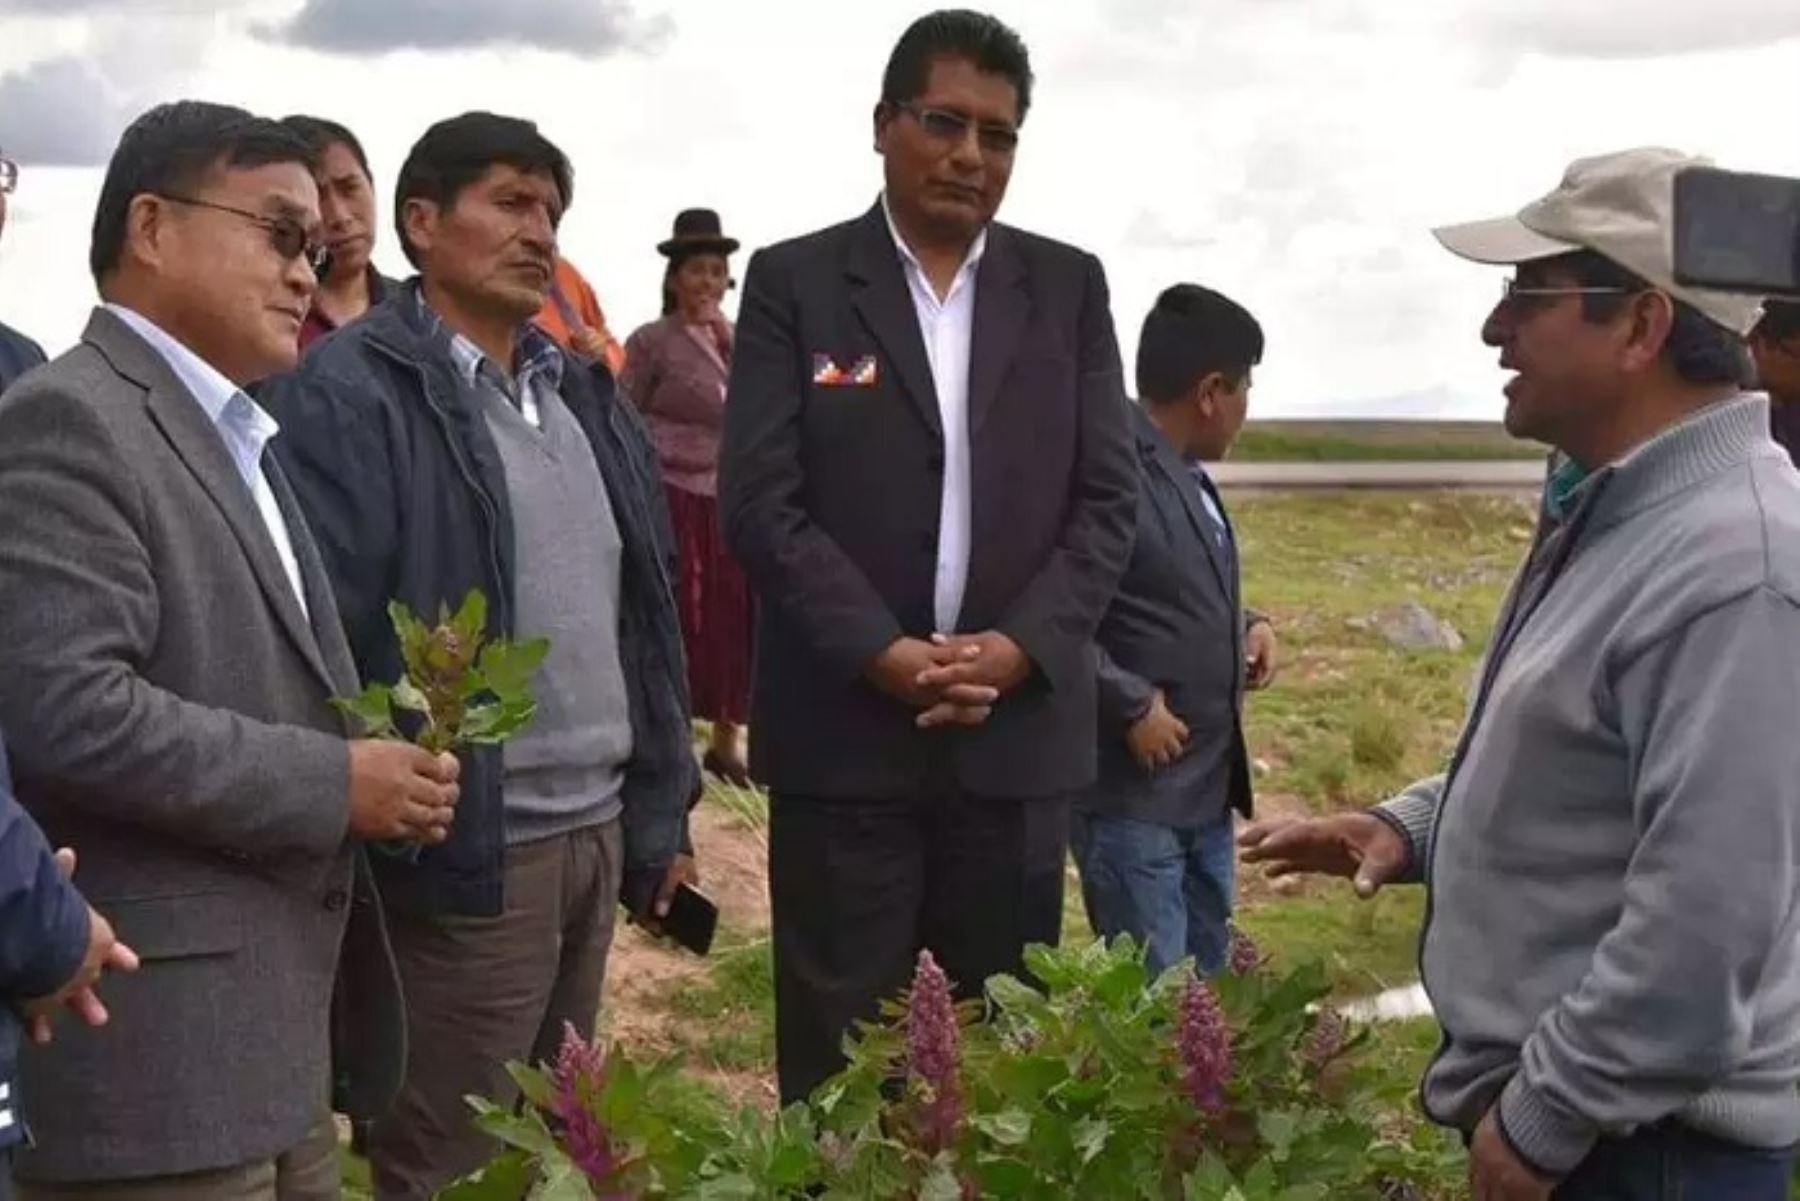 El ingreso de la quinua de Puno a los mercados de China está por concretarse y con ese motivo el embajador de la República Popular China en el Perú, Jia Guide, se encuentra de visita en la región del Altiplano.